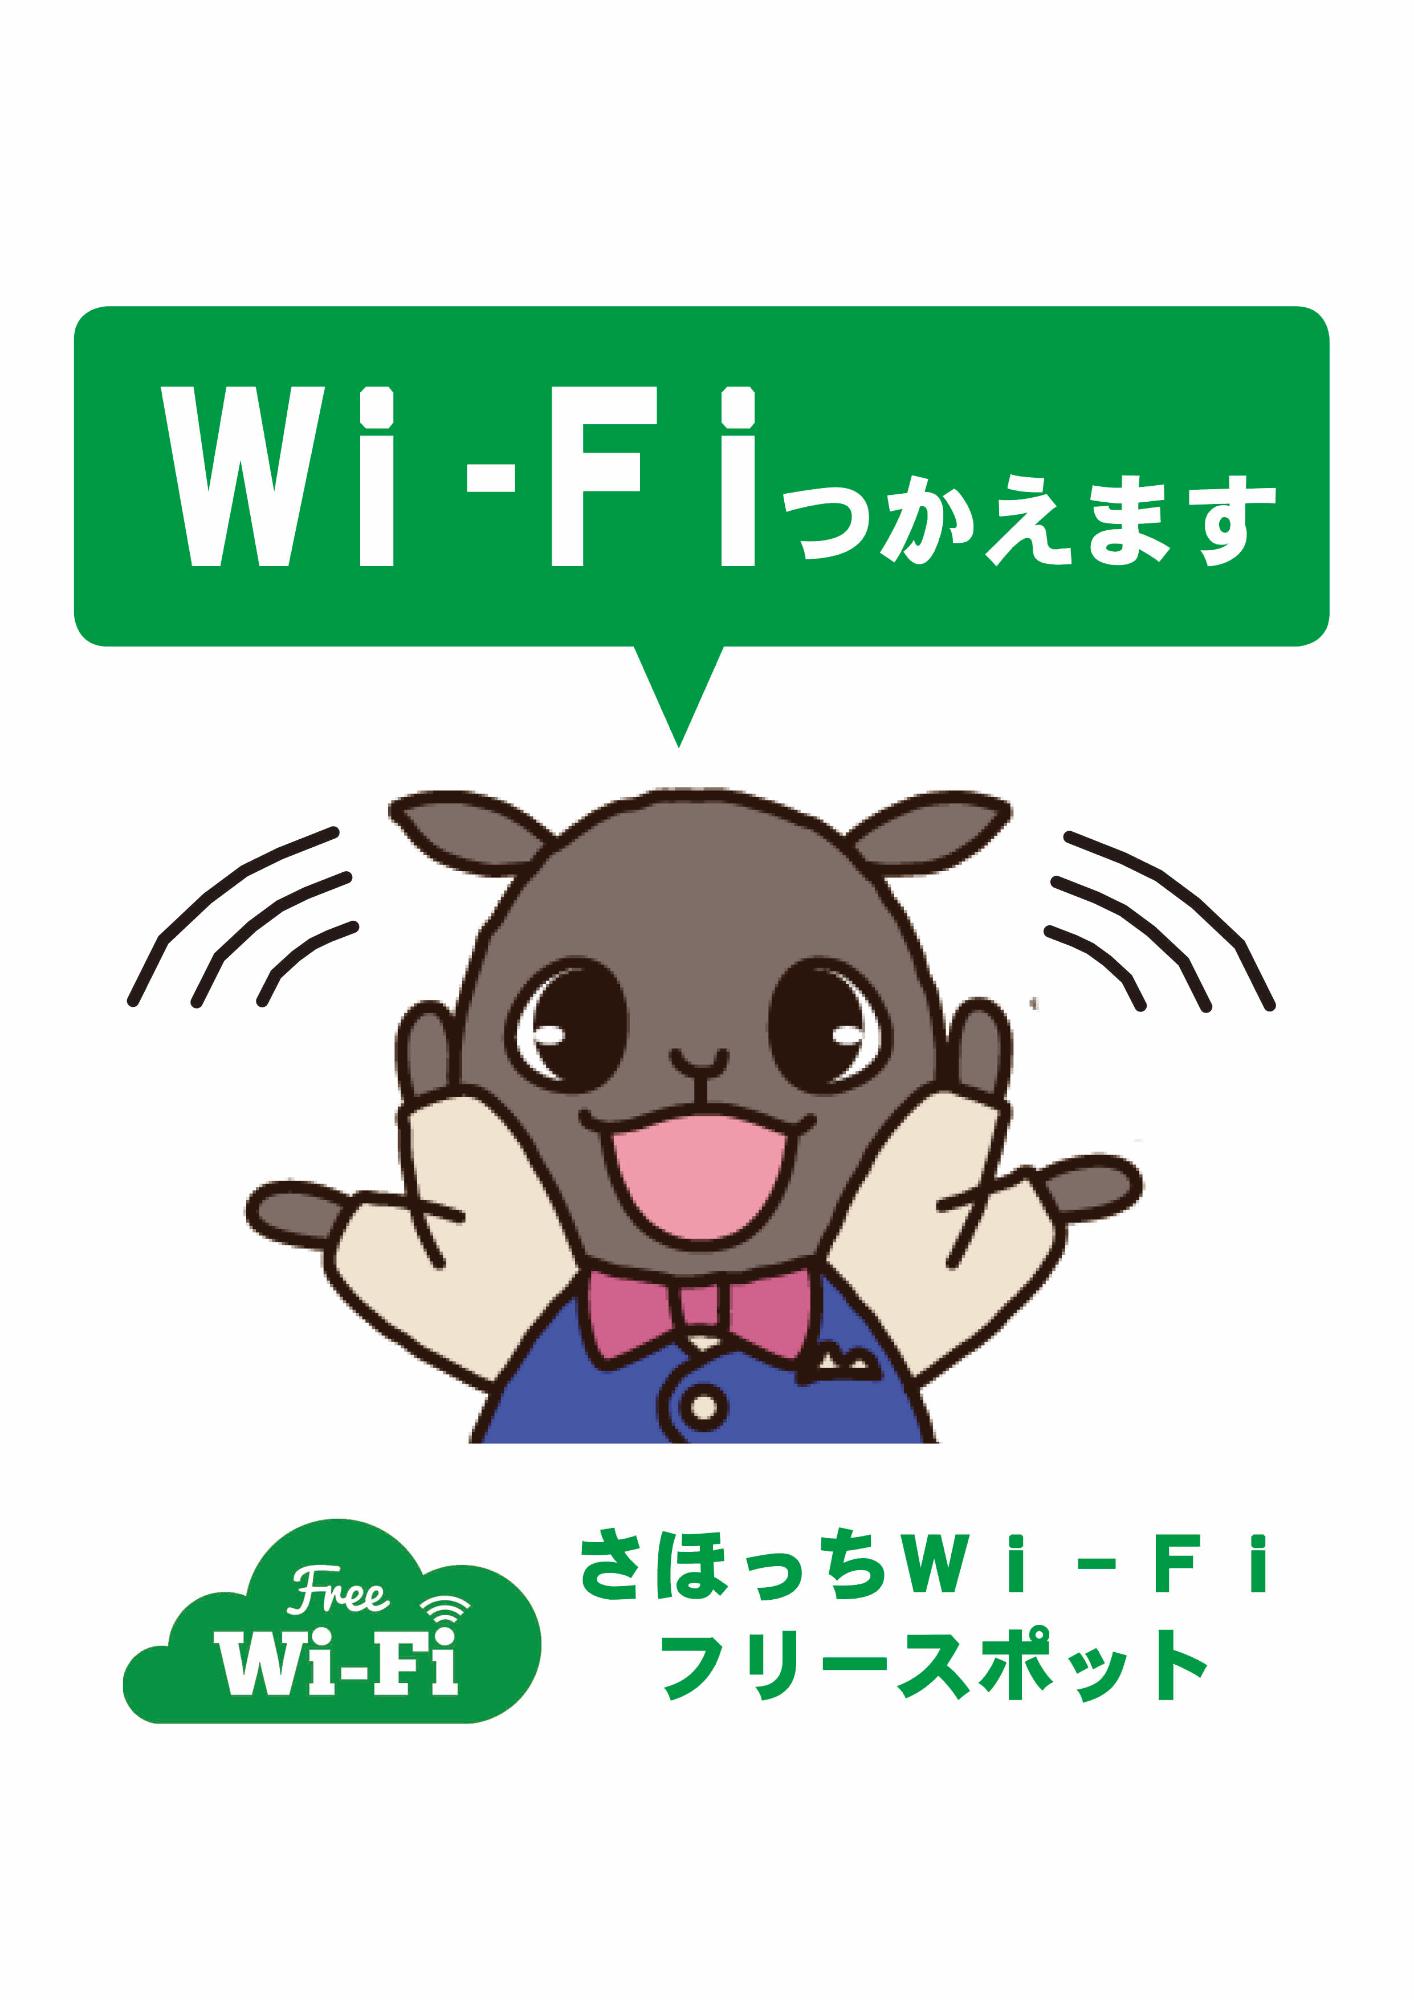 Wi-Fi（ワイファイ）つかえます さほっちWi-Fi（ワイファイ）フリースポット